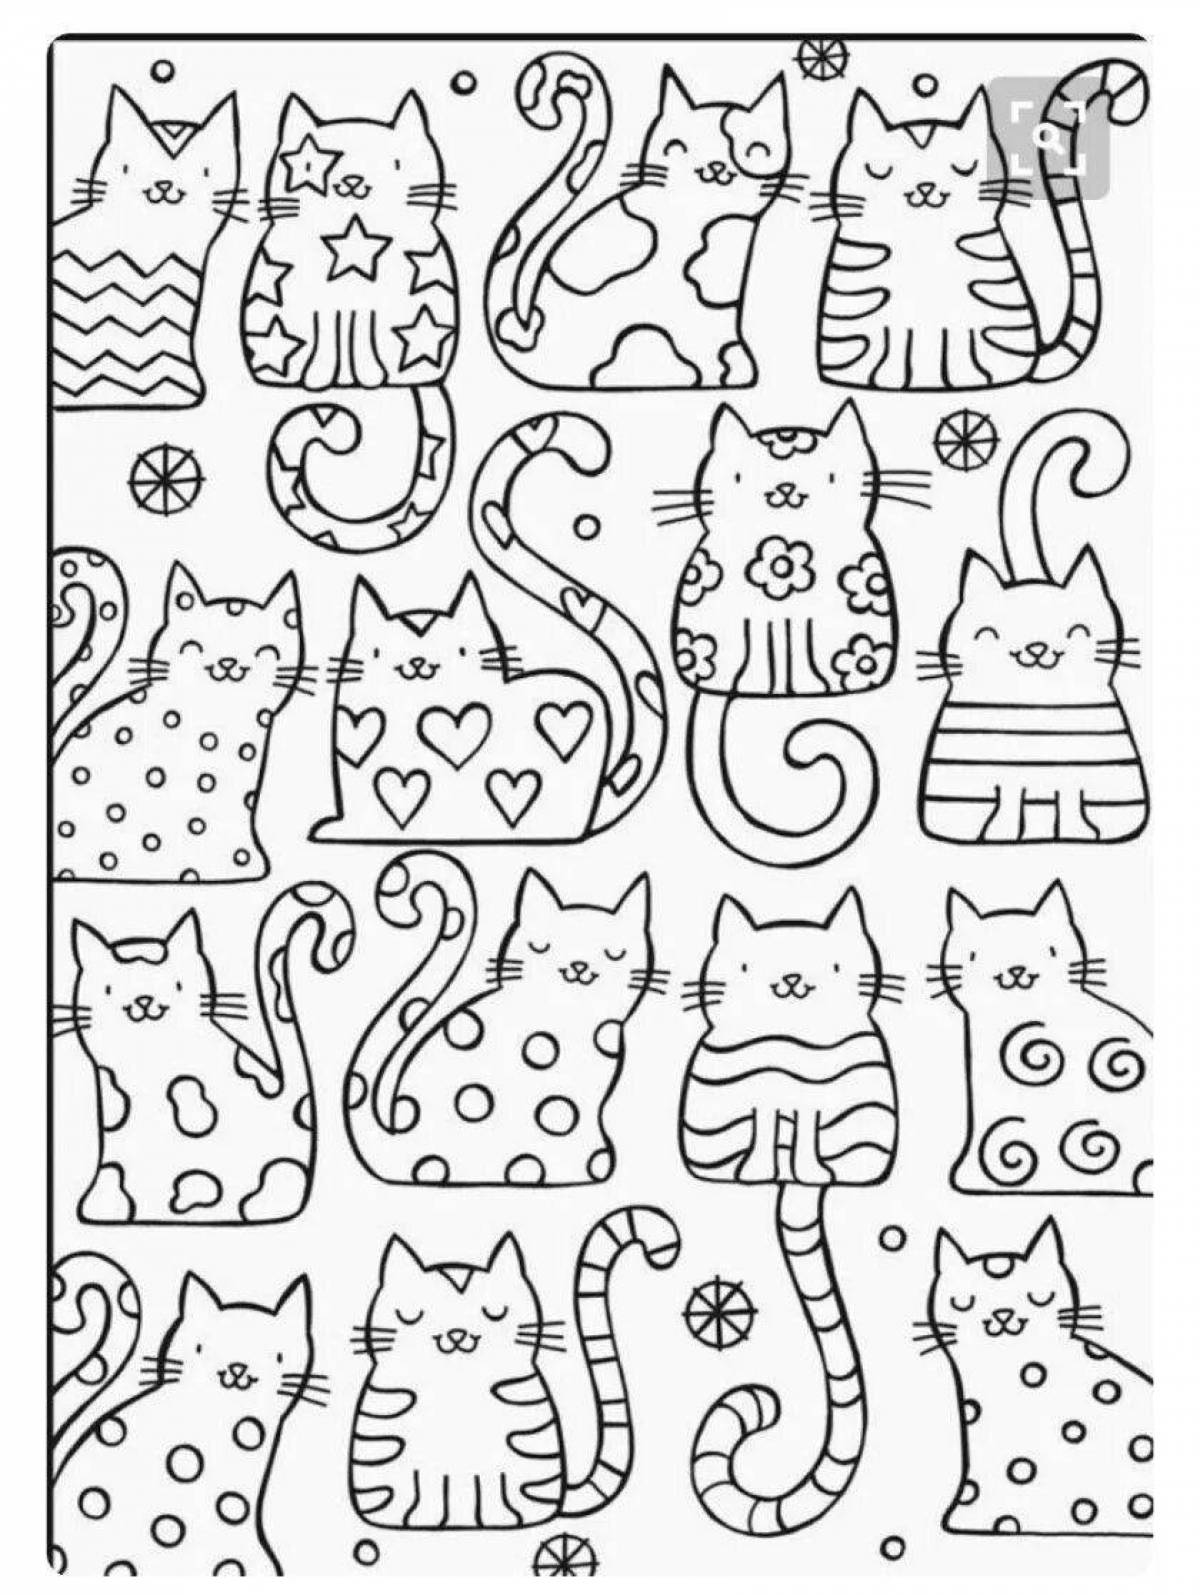 Pretty all cats coloring book